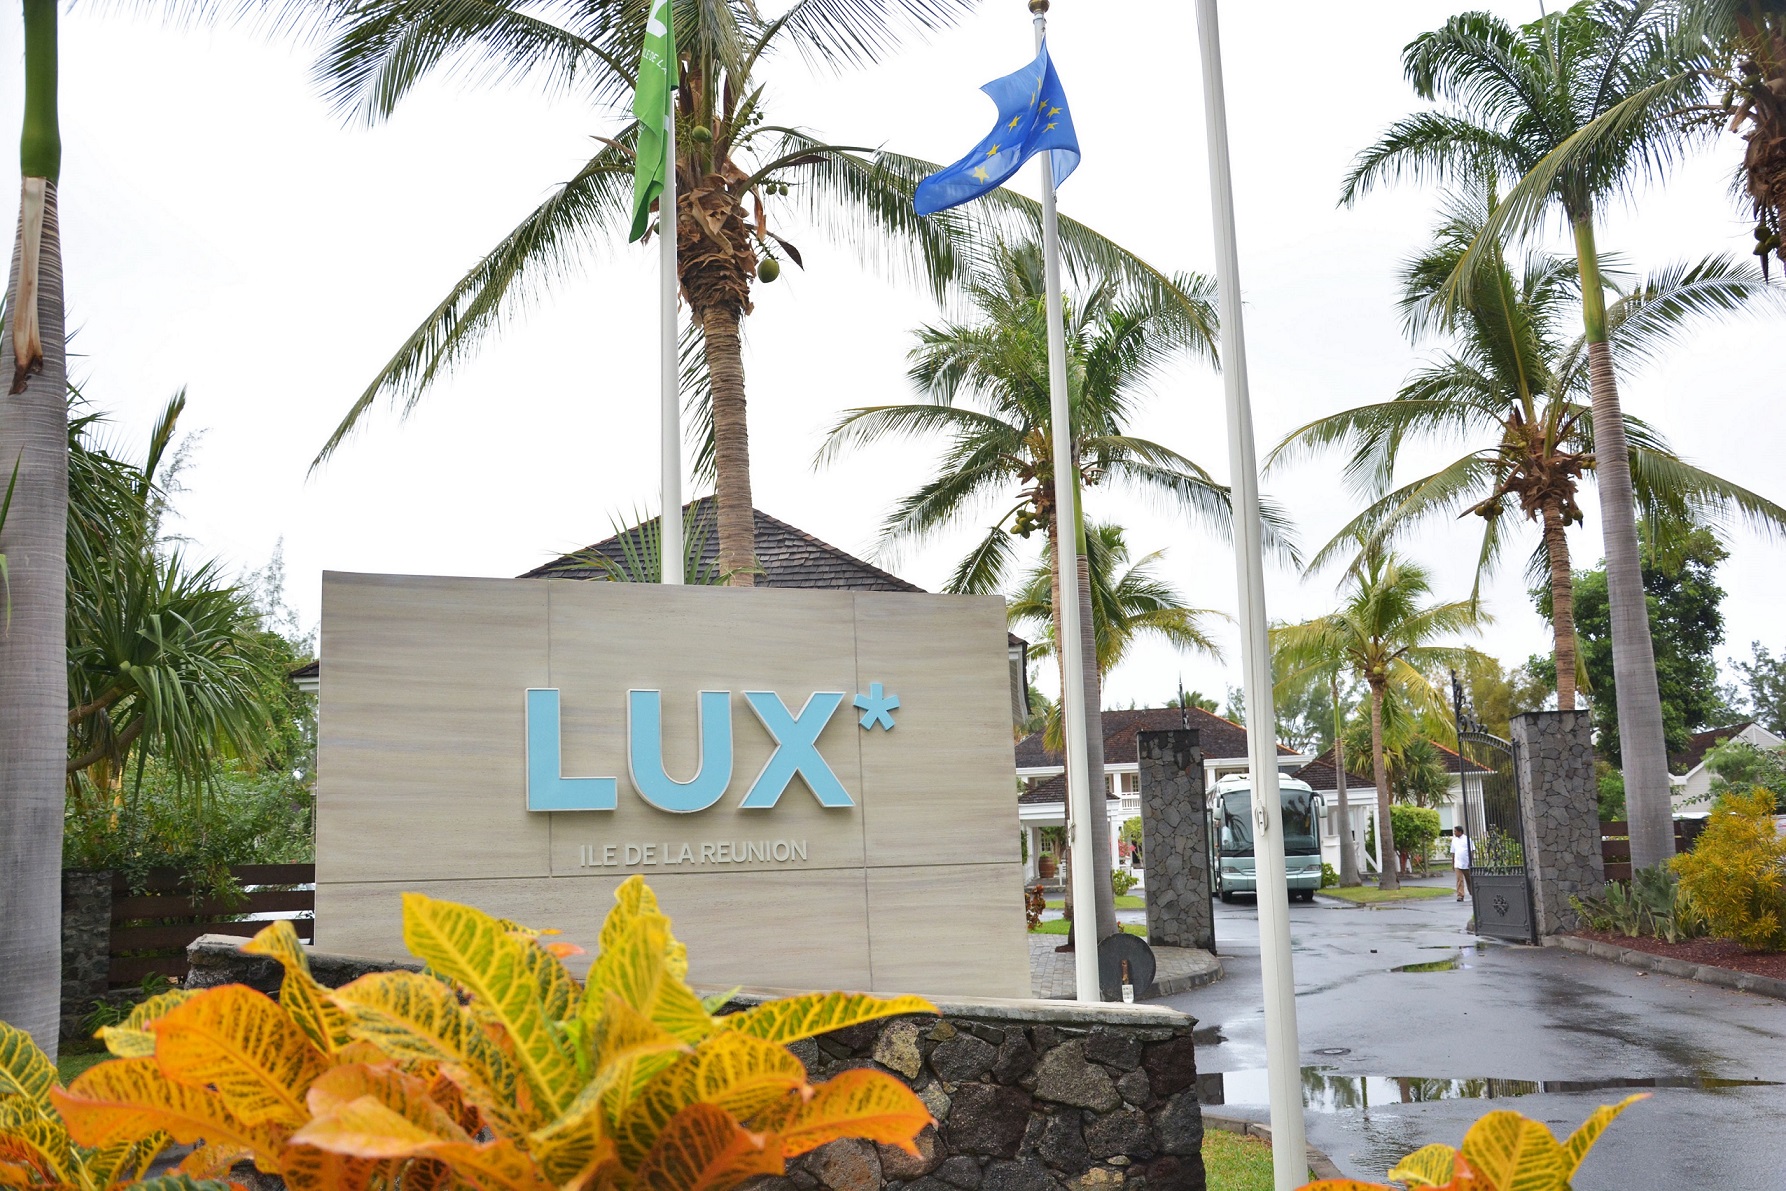 LUX* Ile de la Réunion: le seul hôtel plage cinq étoiles de l'île sœur